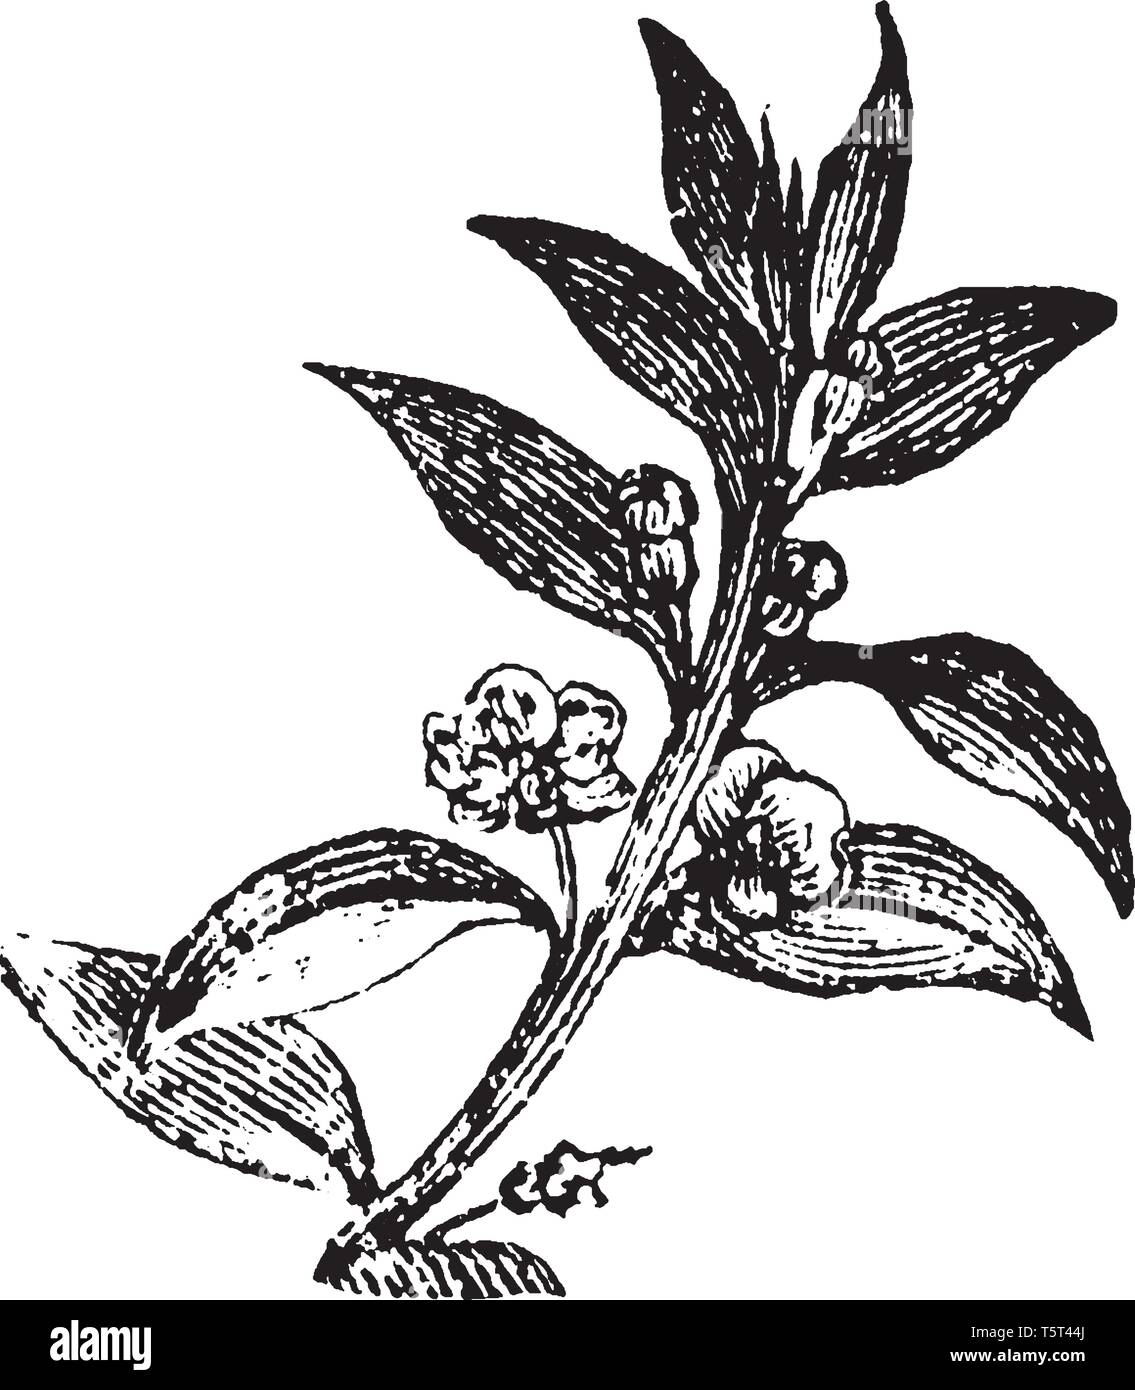 Il mirto è uno qualsiasi degli arbusti sempreverdi in genere Myrtus,  appartenente alla famiglia Myrtaceae, vintage disegno della linea di  incisione o illustrazione Immagine e Vettoriale - Alamy